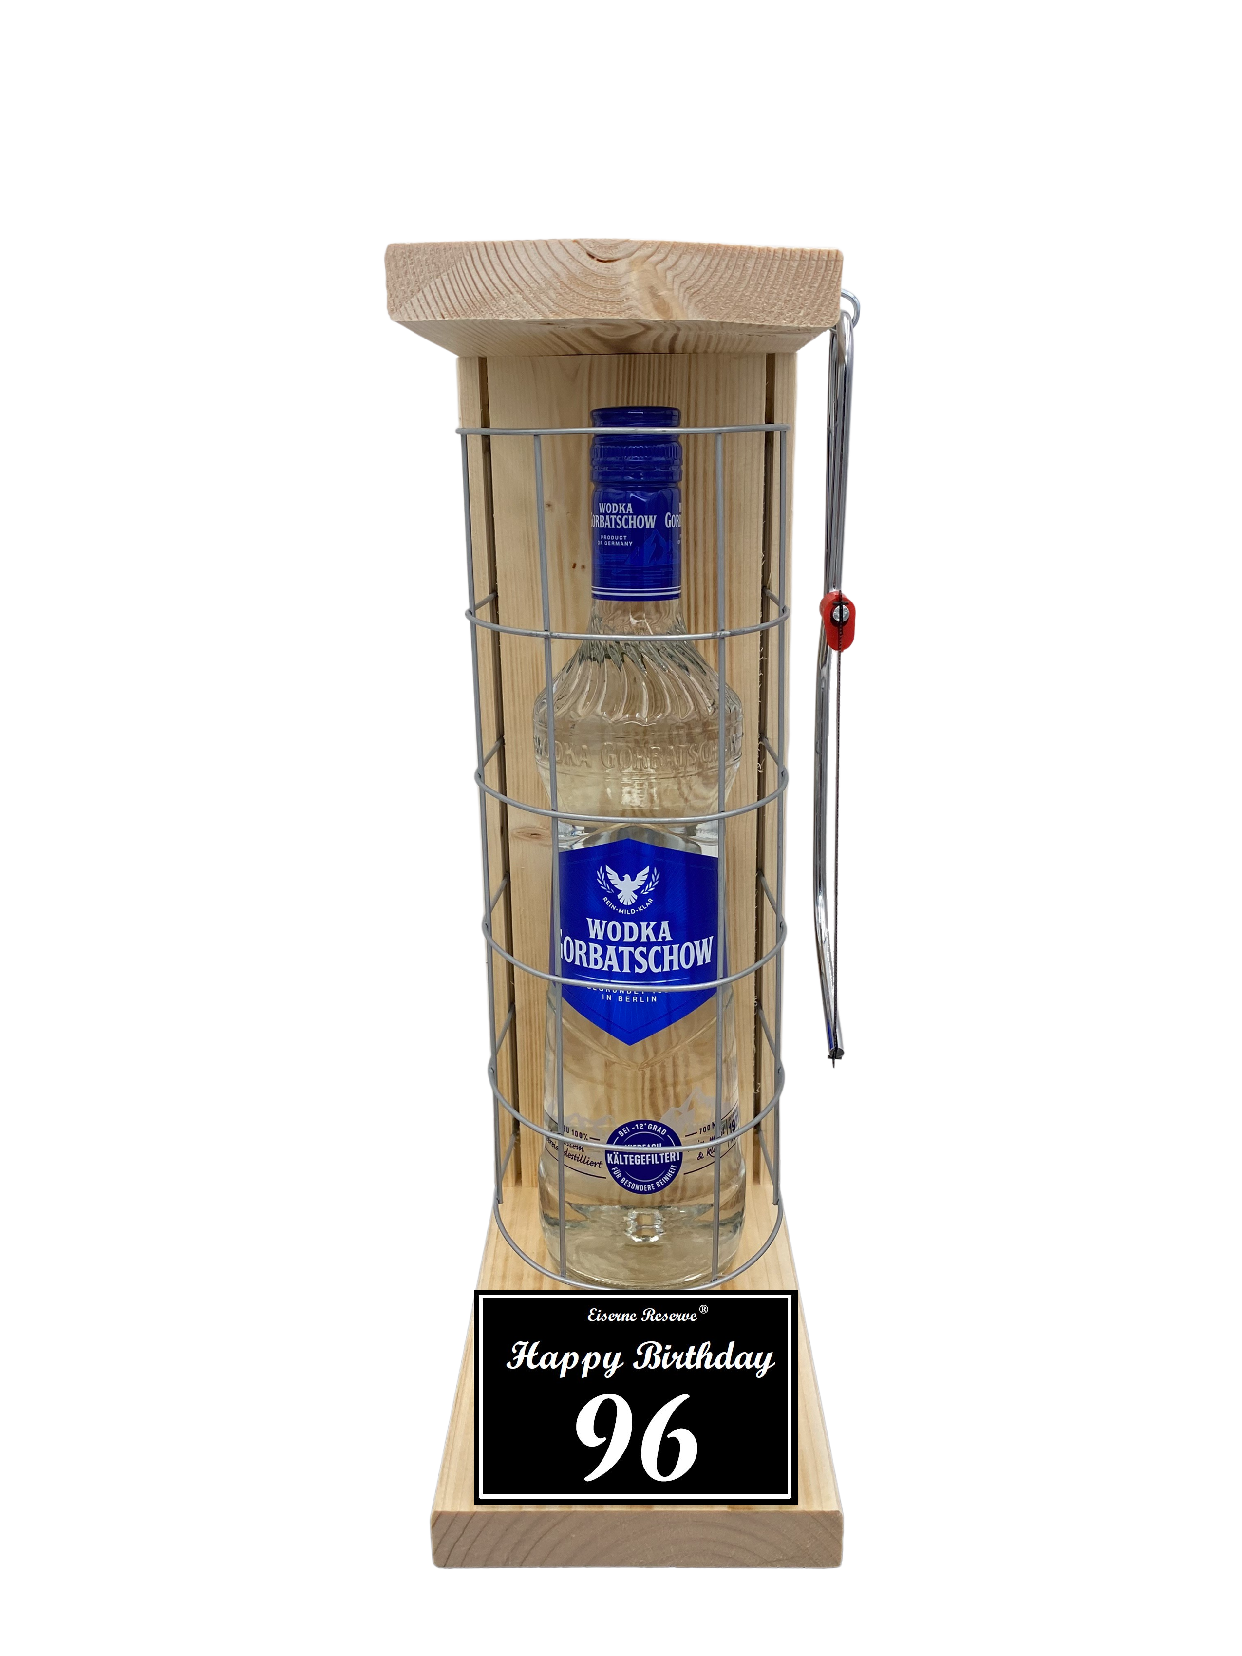 Wodka Geschenk zum 96 Geburtstag - Eiserne Reserve Gitterkäfig